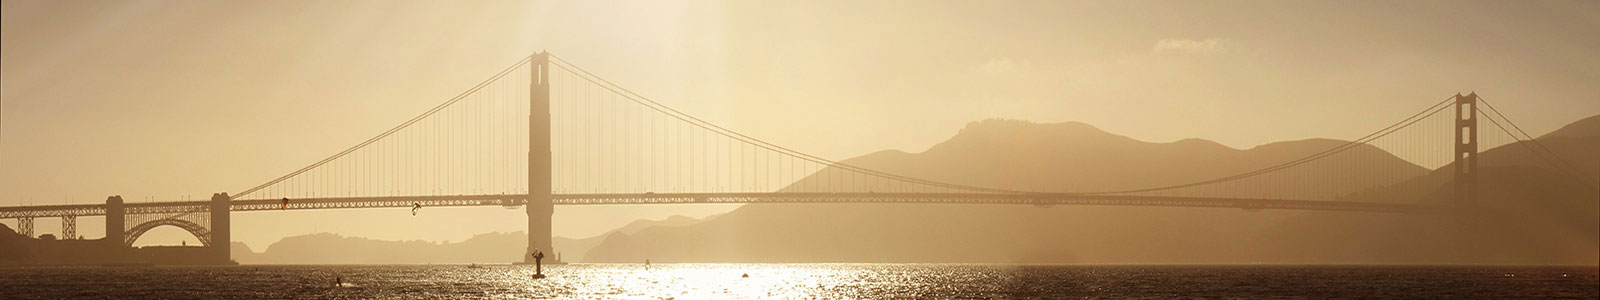 №1451 - Мост Голден Гэйт, Сан-Франциско